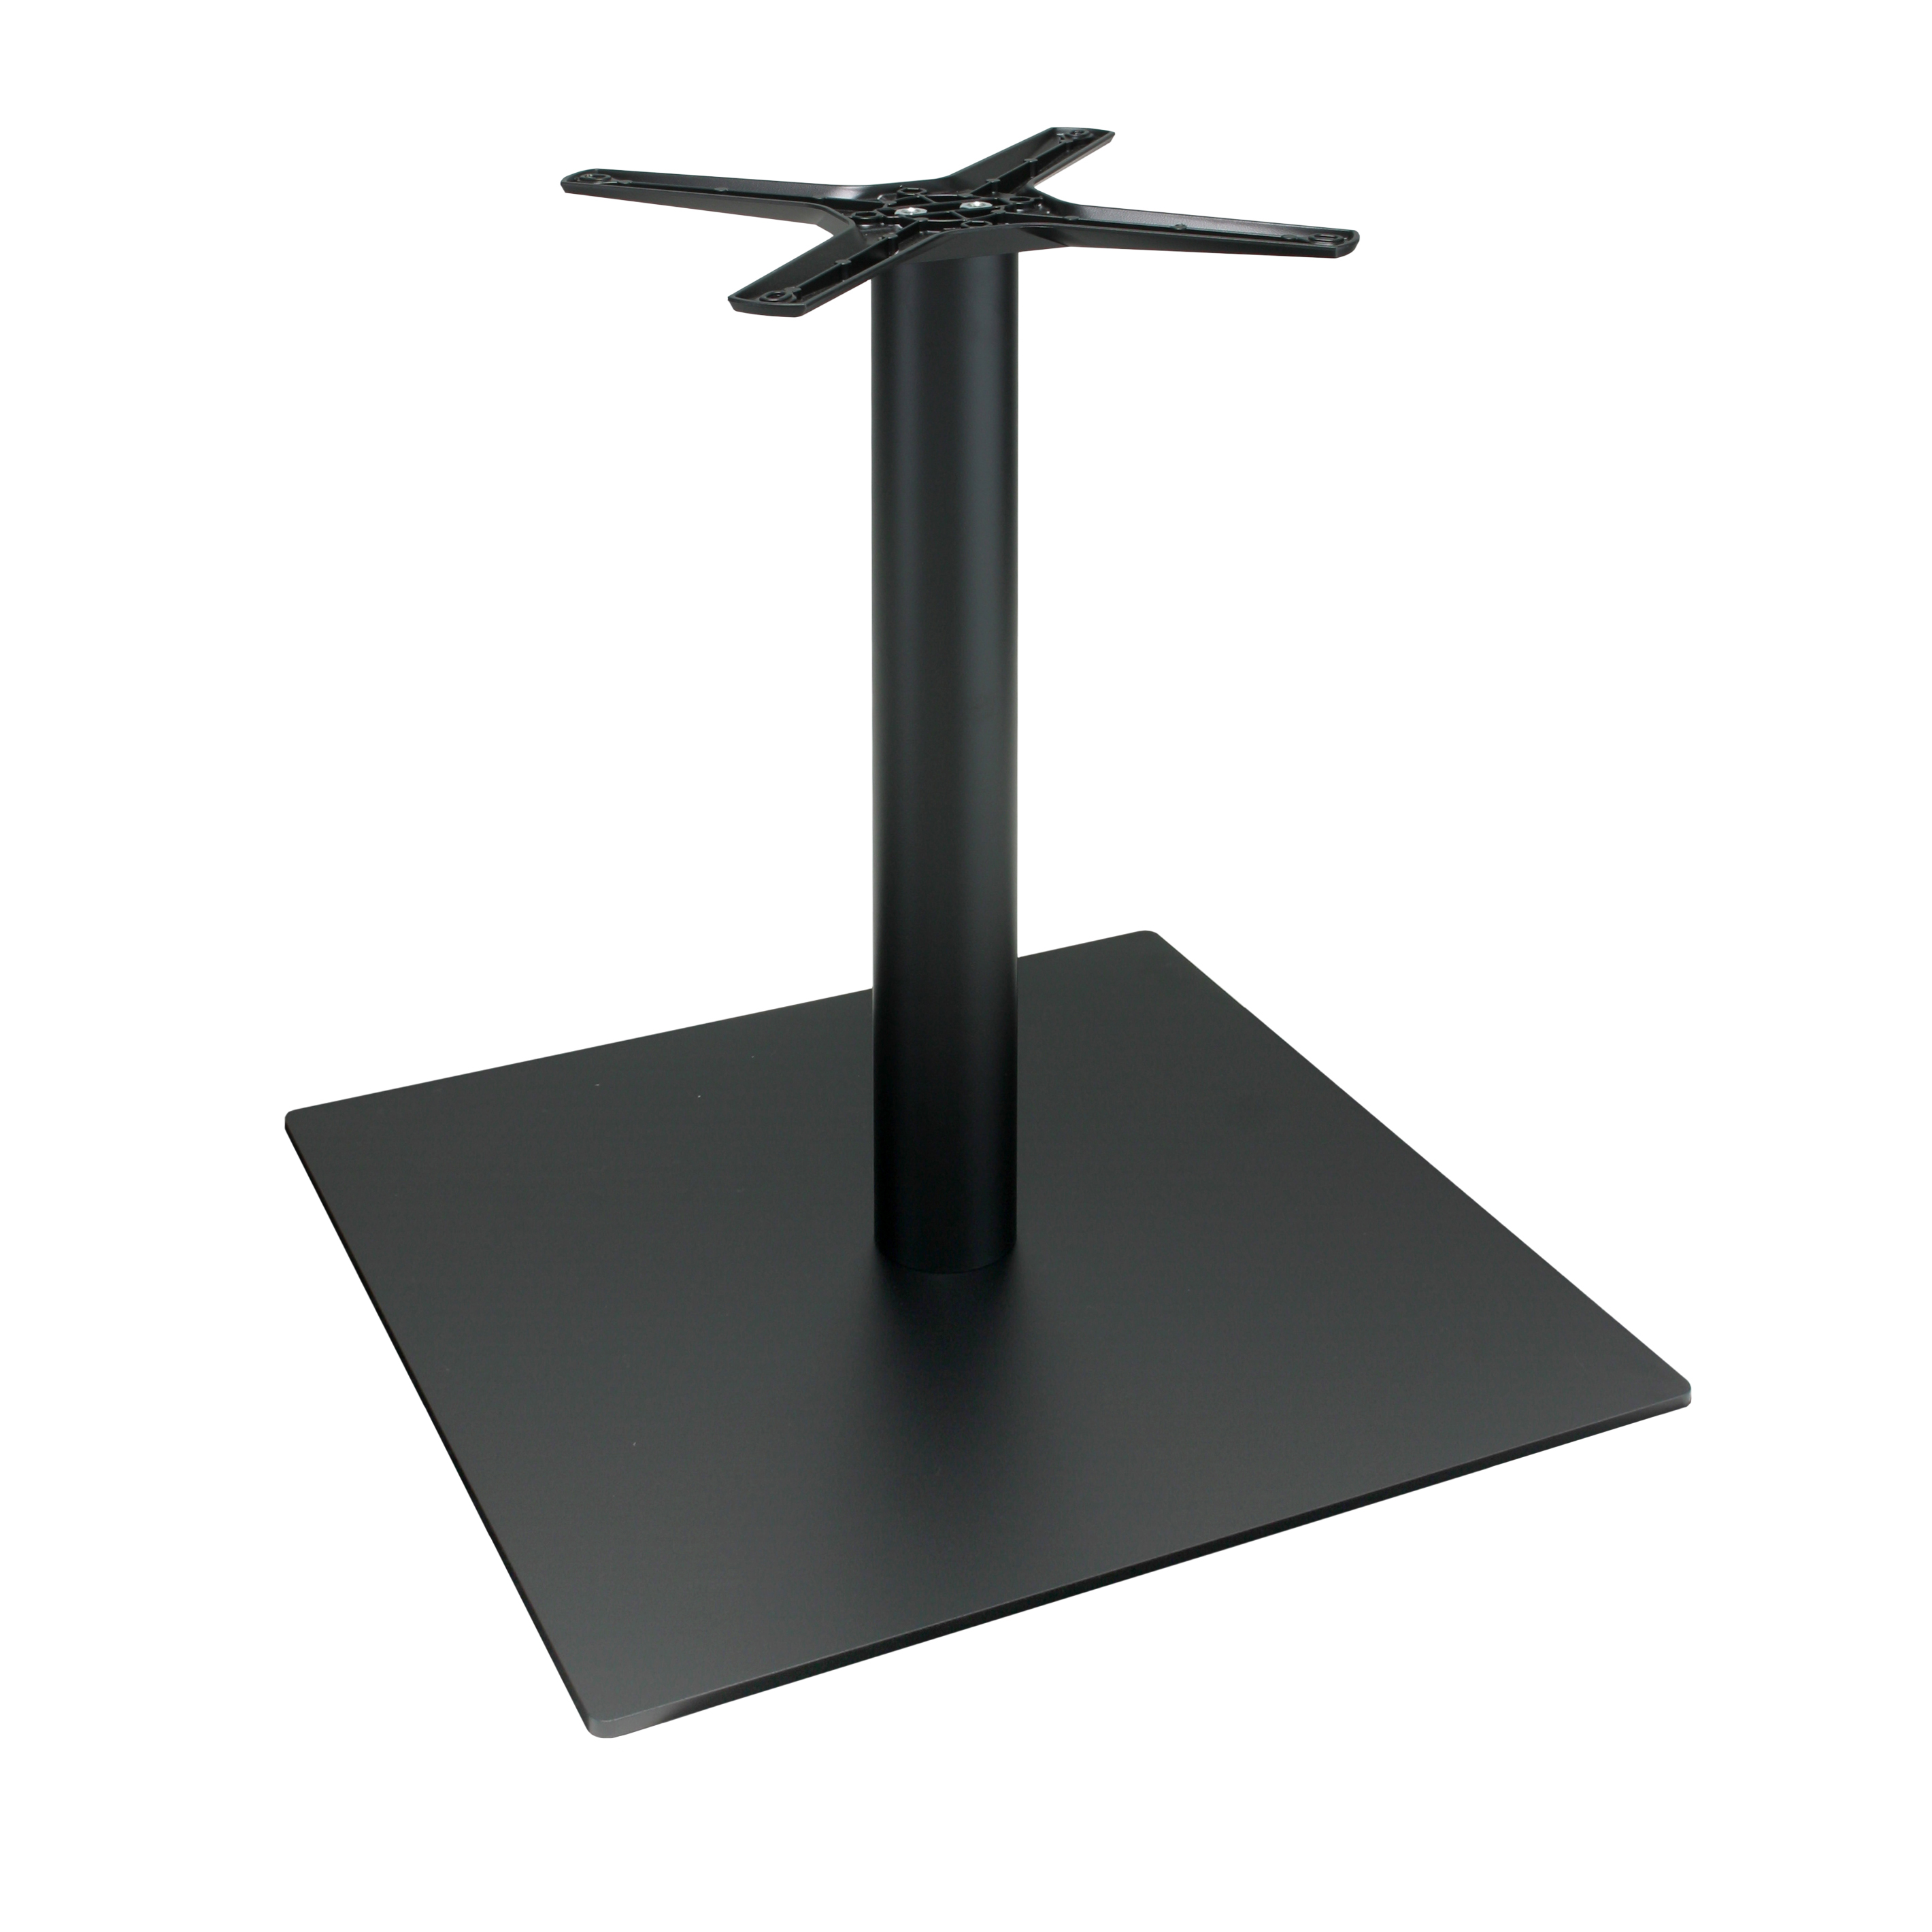 Tischbein P060F aus Metall, pulverbeschichtet schwarz, quadratisch